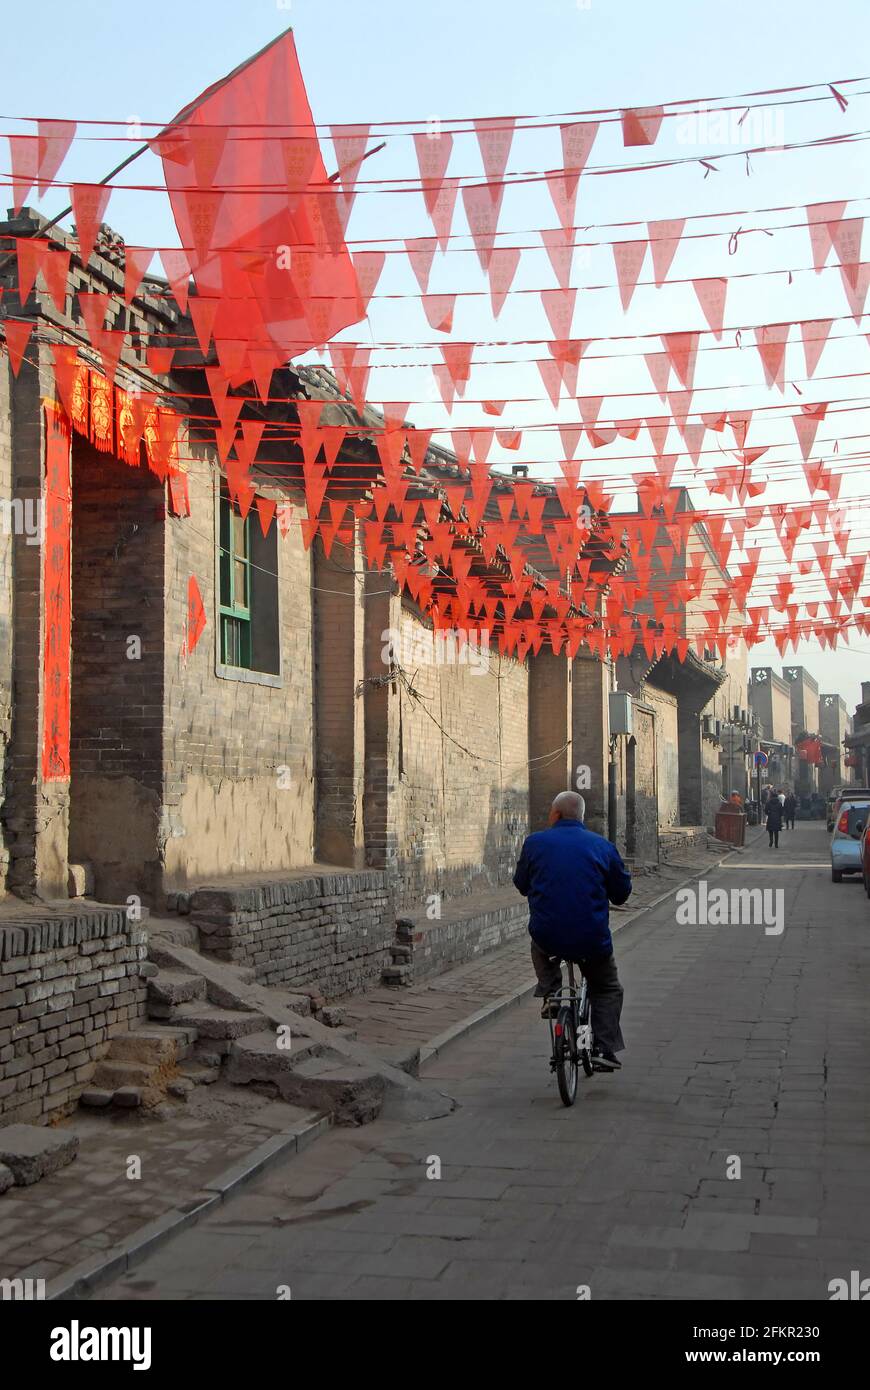 Un arrière-chemin à Pingyao, province du Shanxi, Chine avec des drapeaux rouges survolant la route et un vieux vélo. Banque D'Images